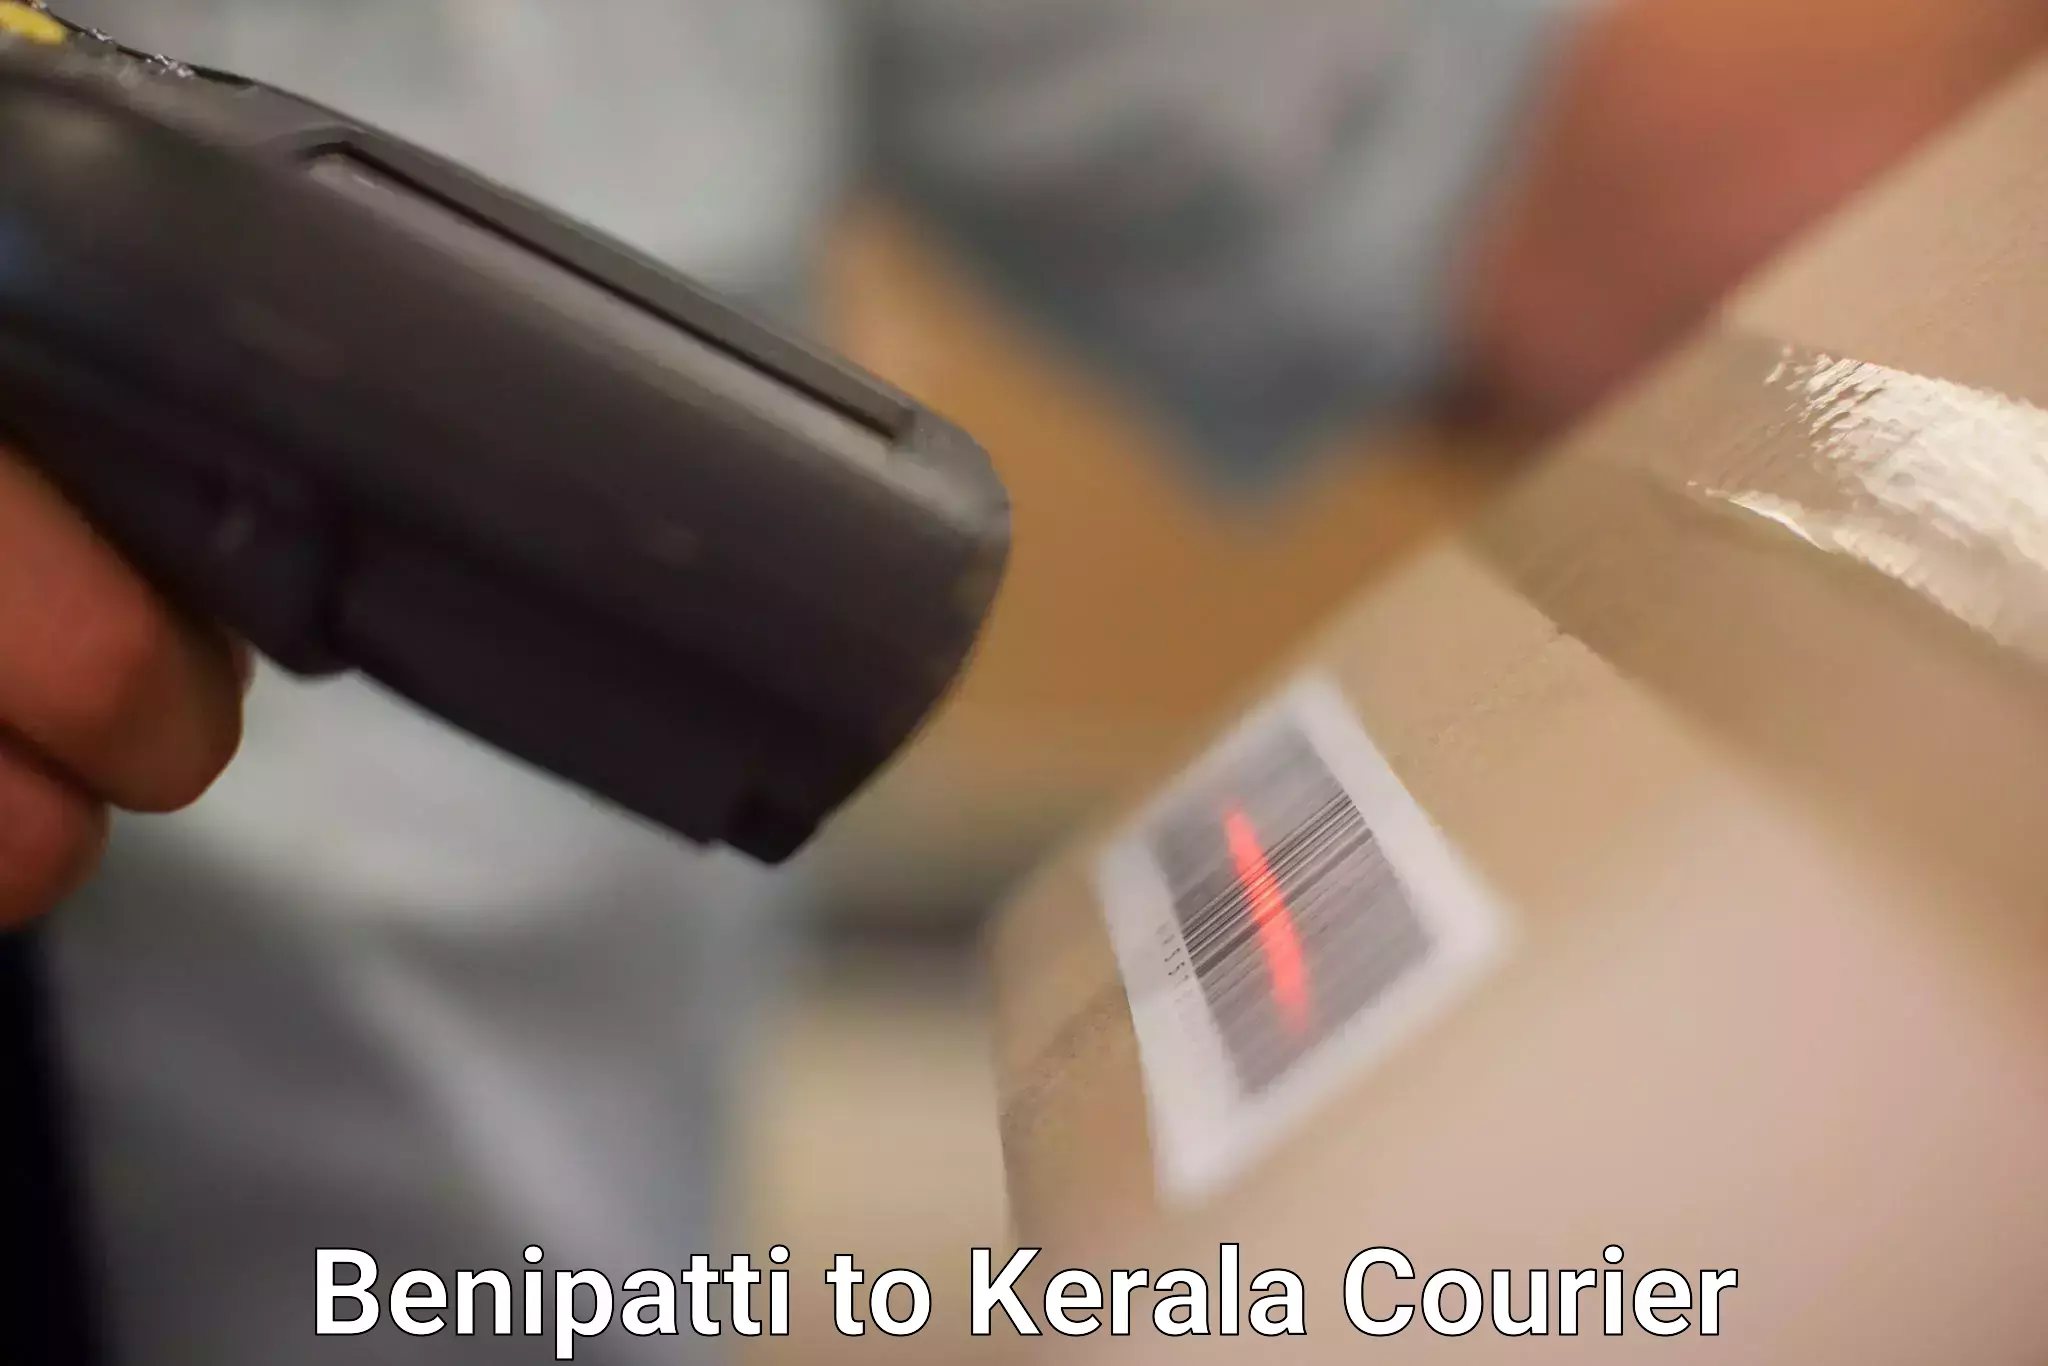 User-friendly delivery service Benipatti to Kerala